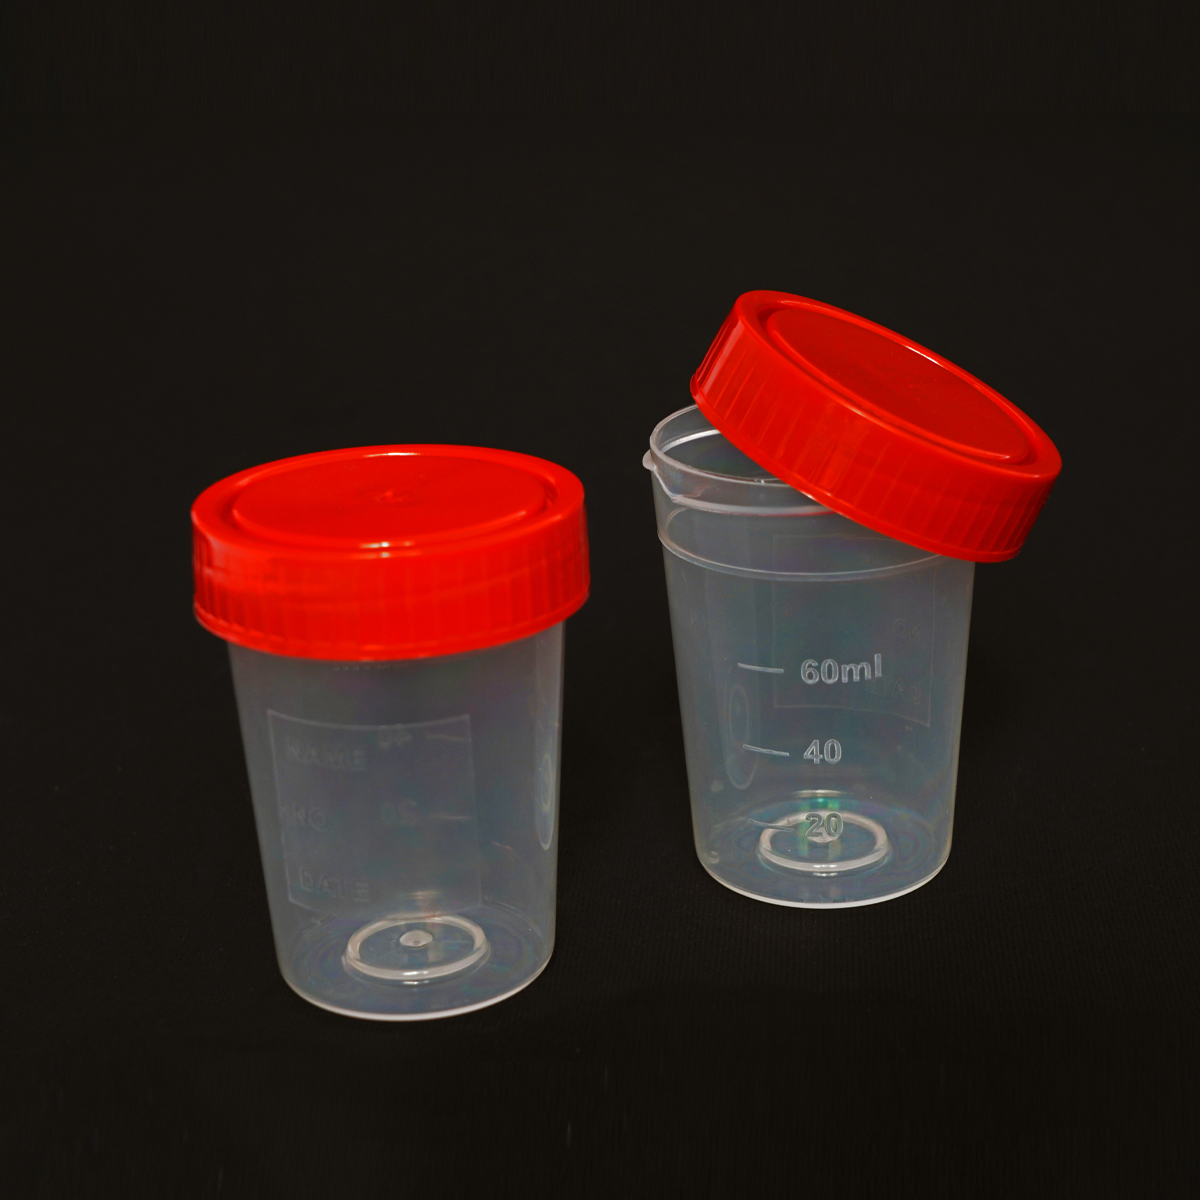 ظرف  نمونه ادرار غیر استریل  نیمه شفاف 70 میلی لیتر  - Urine Container - نوآوران تولید پویا    NTP - مصرفی - نمونه گیری - نوآوران طب بین الملل